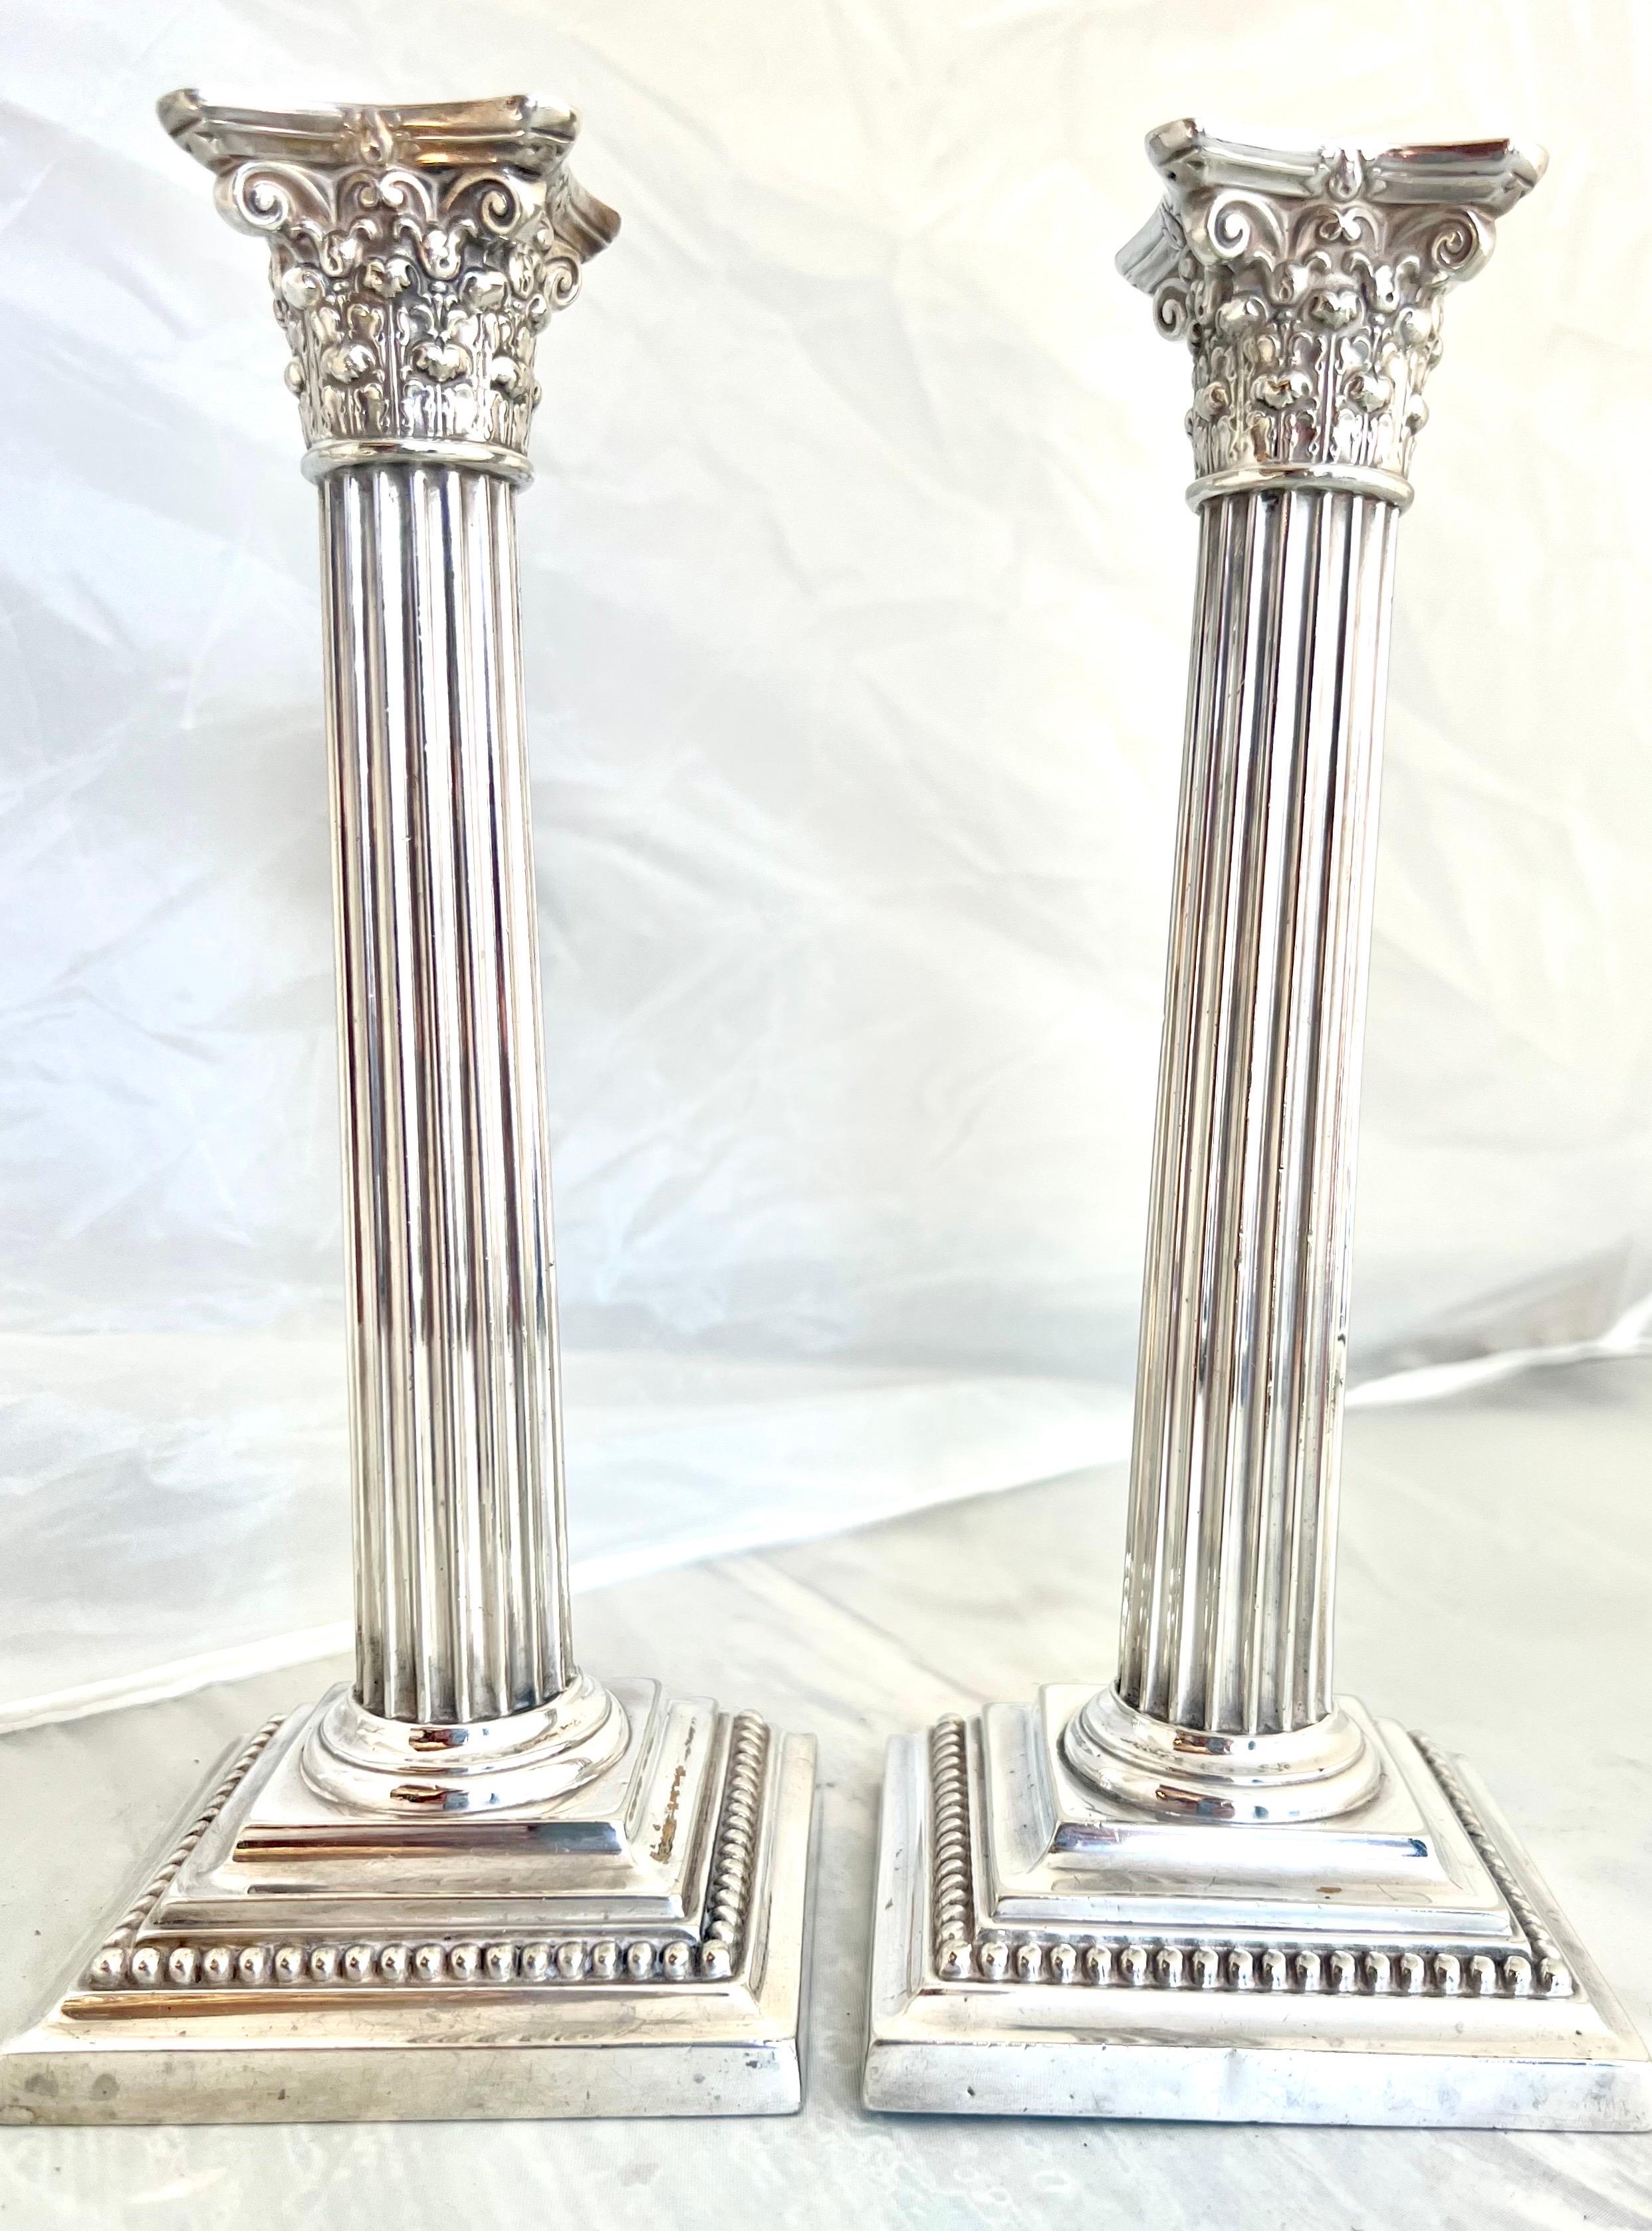 Das Paar Gorham-Kerzenhalter aus Silberblech in Form von Säulen mit korinthischen Kapitellen und abnehmbaren Deckeln mit feinen Perlendetails ist ein Beispiel für die Handwerkskunst und die Liebe zum Detail, die für Gorham-Stücke charakteristisch